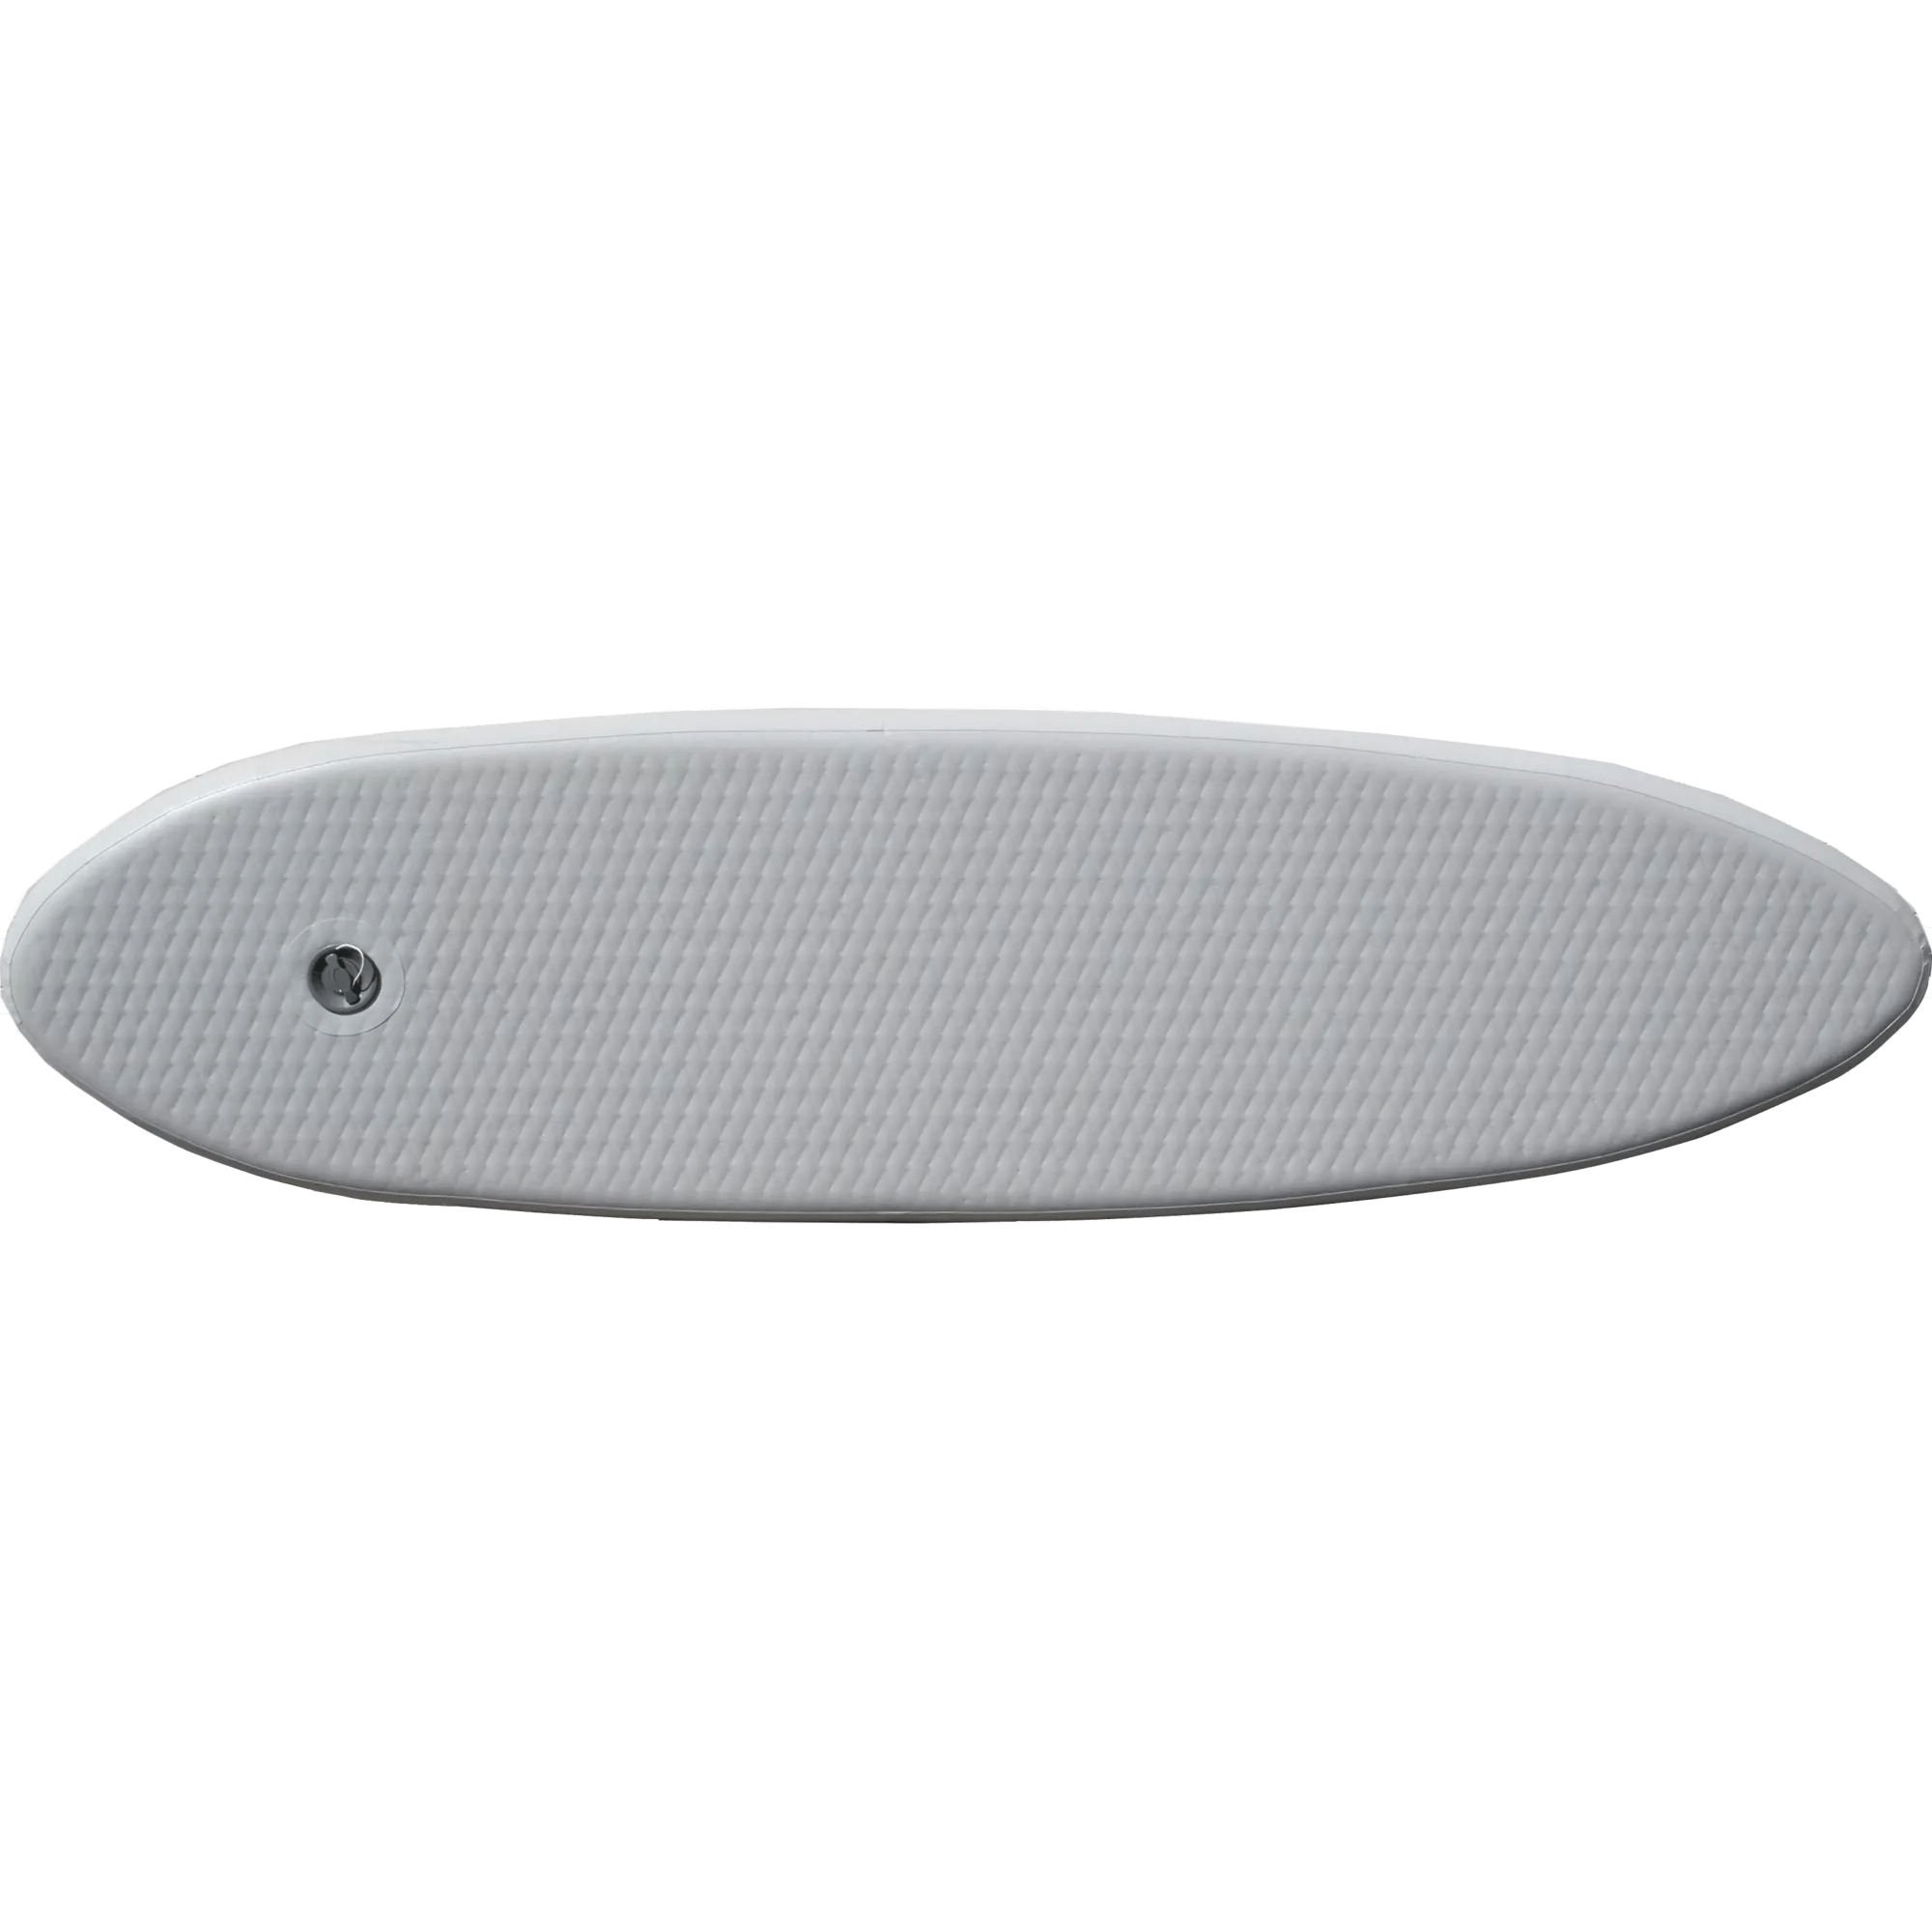 ADVANCED ELEMENTS - Plancher à point de chute Rigidform – Kayak Advancedframe - Grey - AE-DS1012 - ISO 